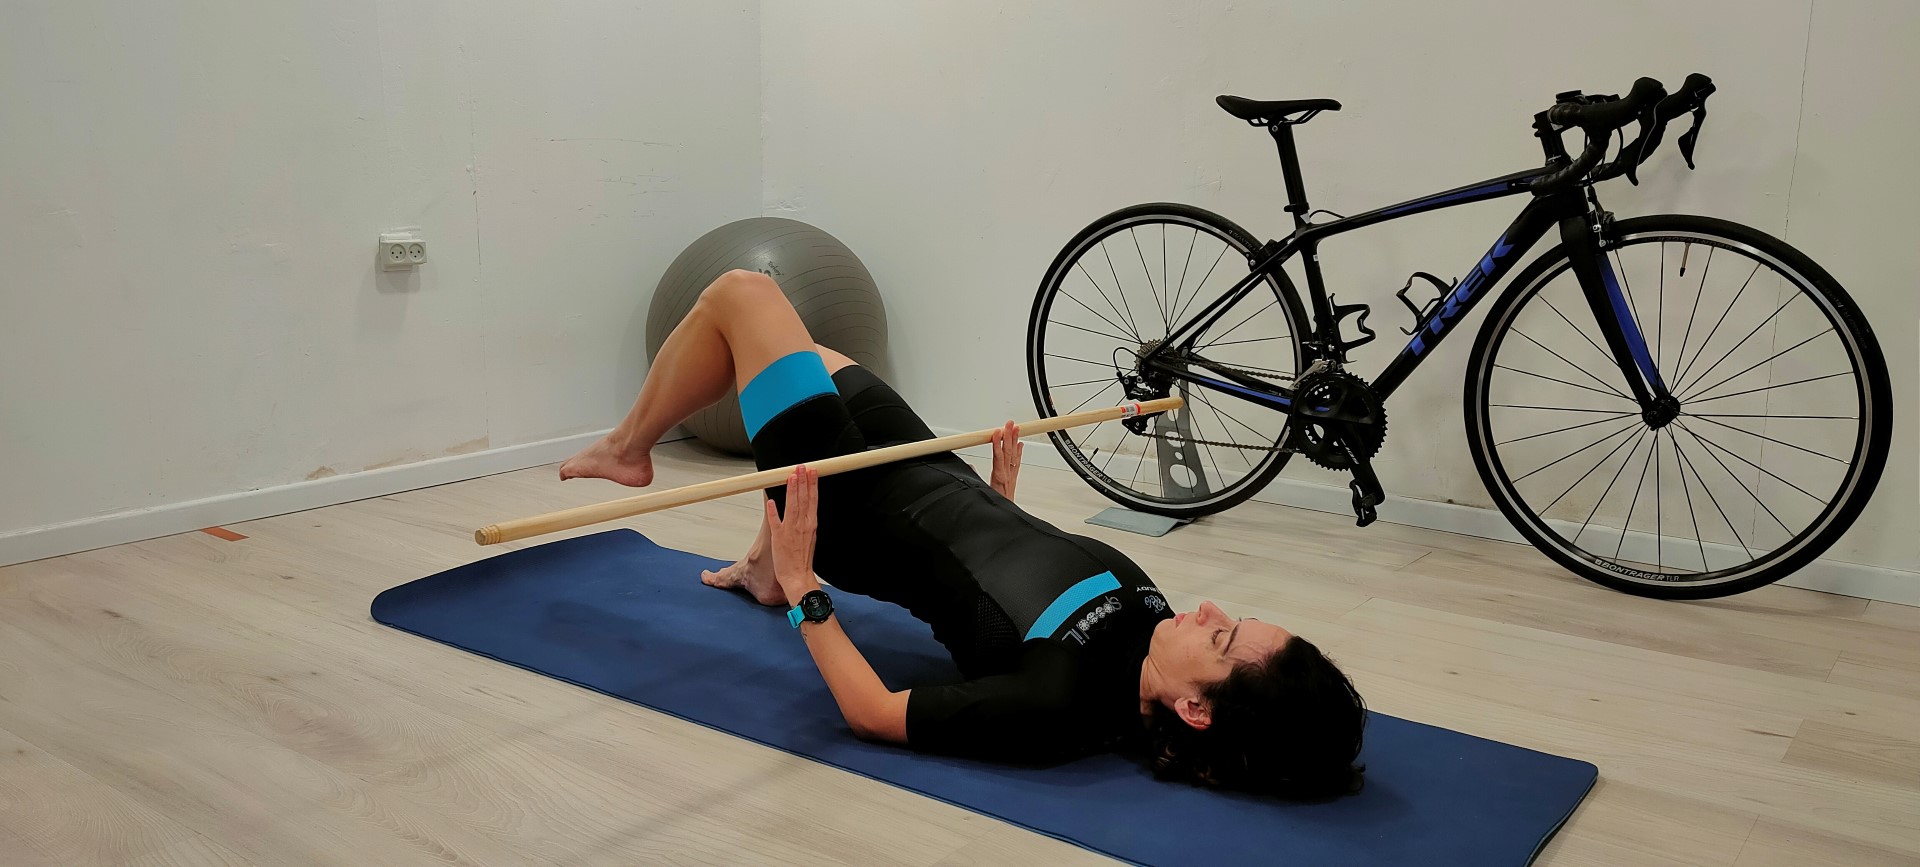 בריאות- כאבי ברכיים ברכיבת אופניים, חלק 2- תוכנית תרגילים